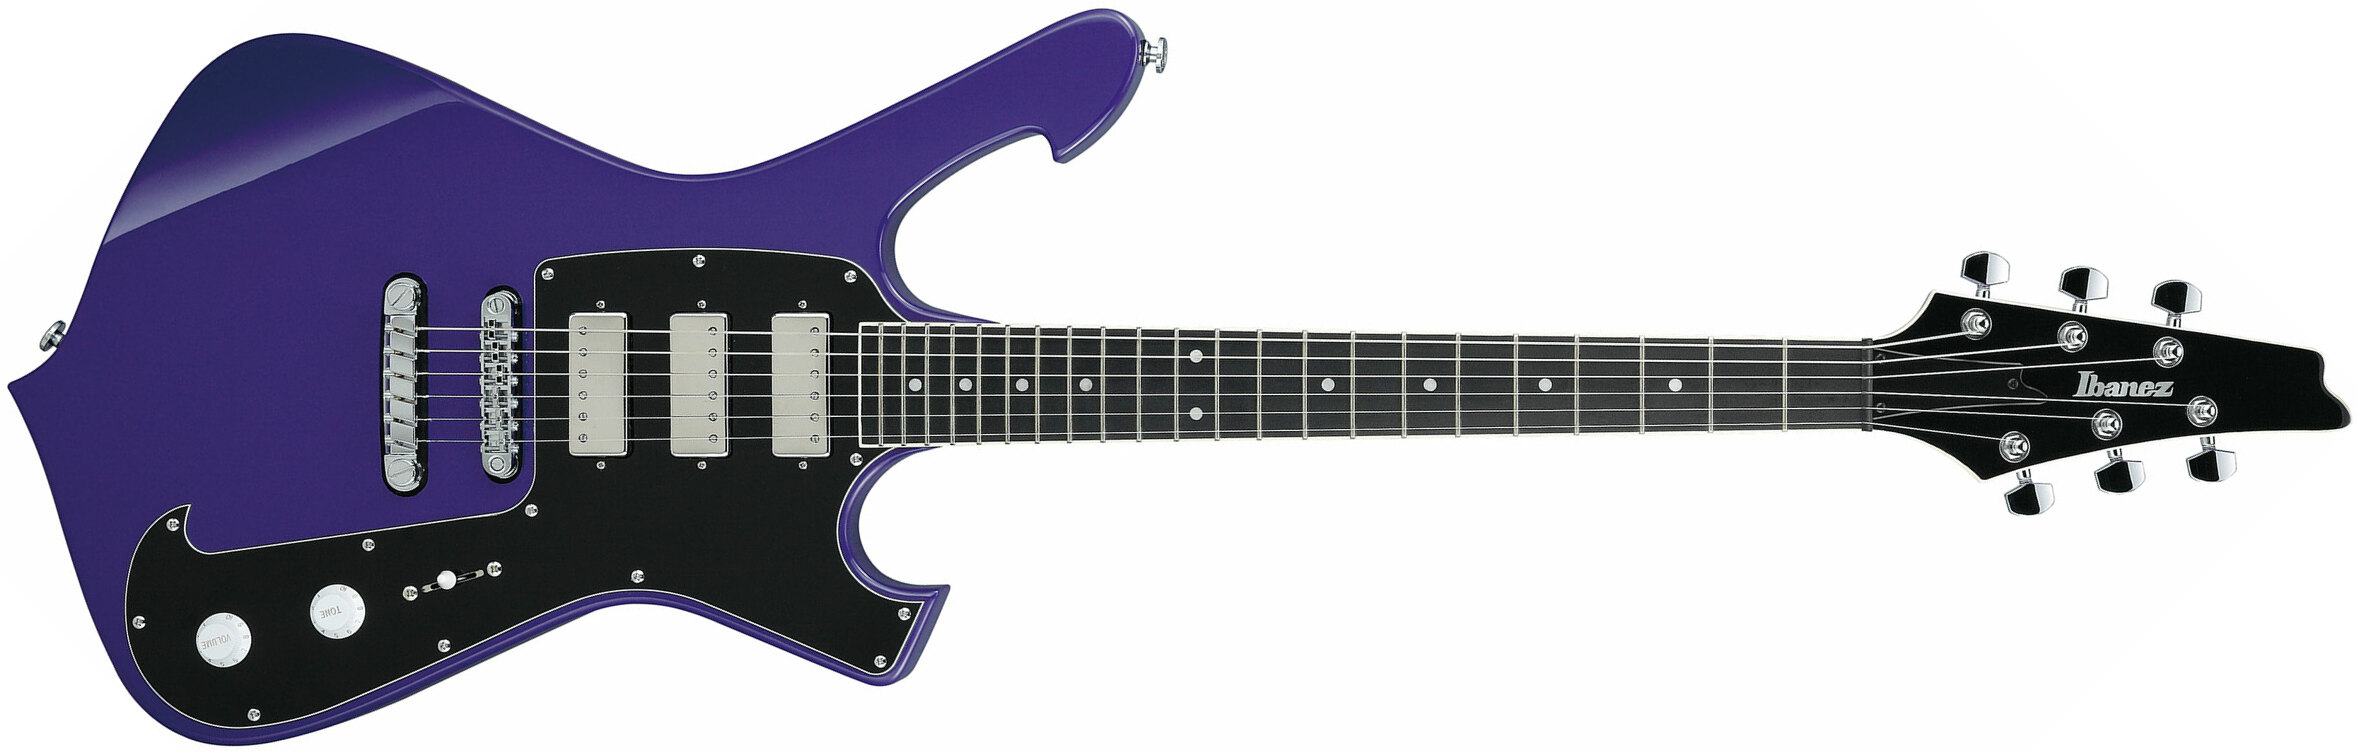 Ibanez Paul Gilbert Frm300 Pr Signature Hhh Ht Eb +housse - Purple - Guitarra eléctrica de autor - Main picture